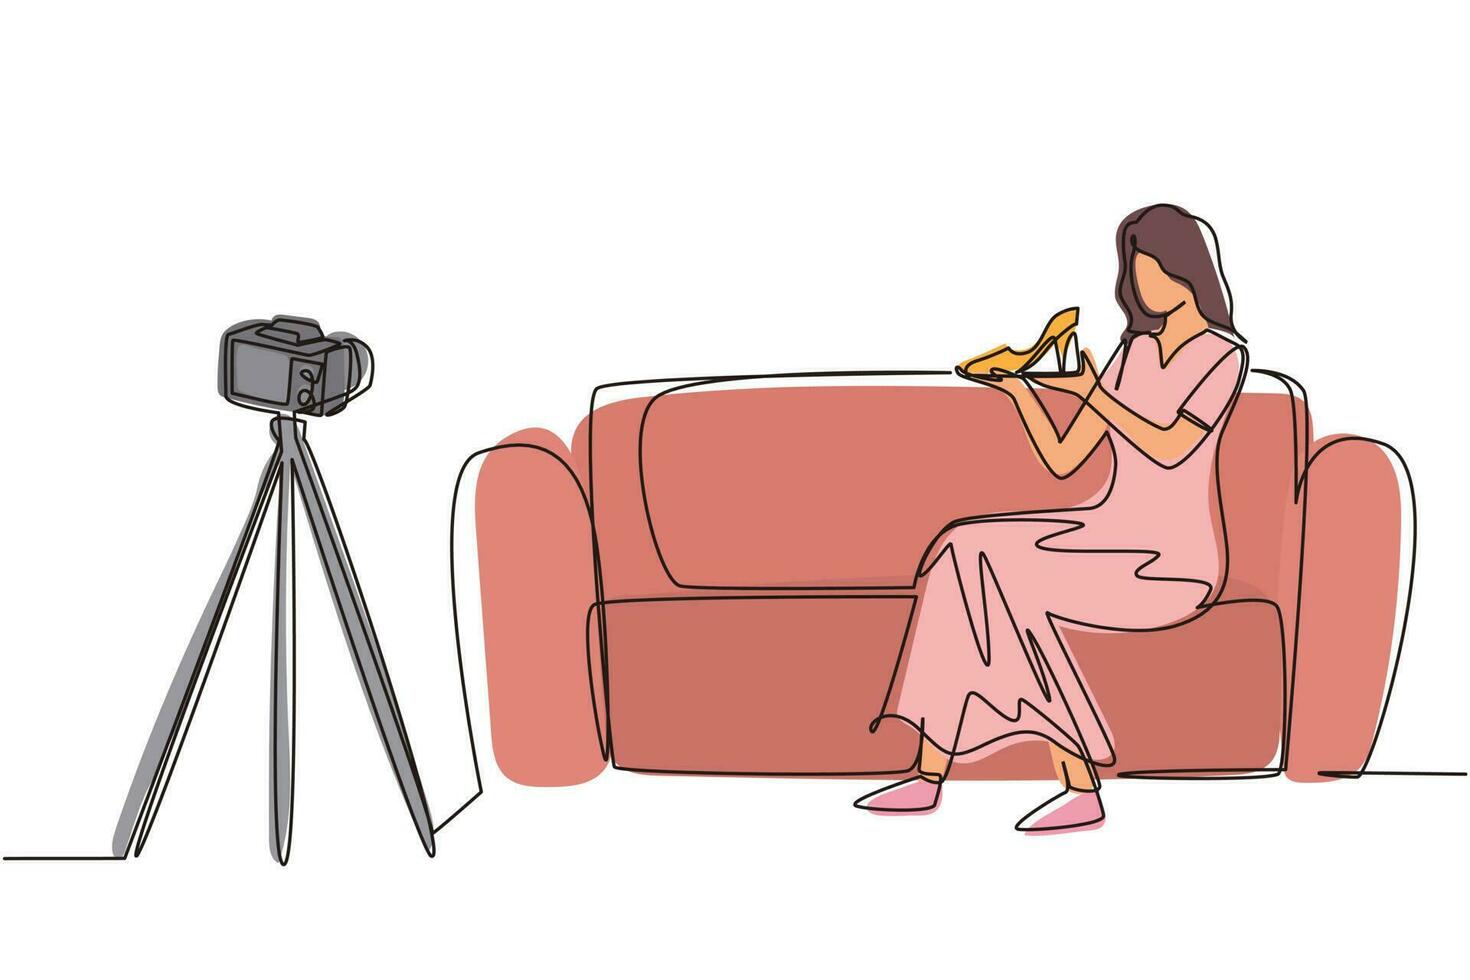 la blogger di bellezza alla moda di disegno a linea continua singola è seduta sul divano, rivedendo le scarpe con i tacchi nelle sue mani mentre registra video con la fotocamera digitale, il treppiede. illustrazione vettoriale di un disegno di linea